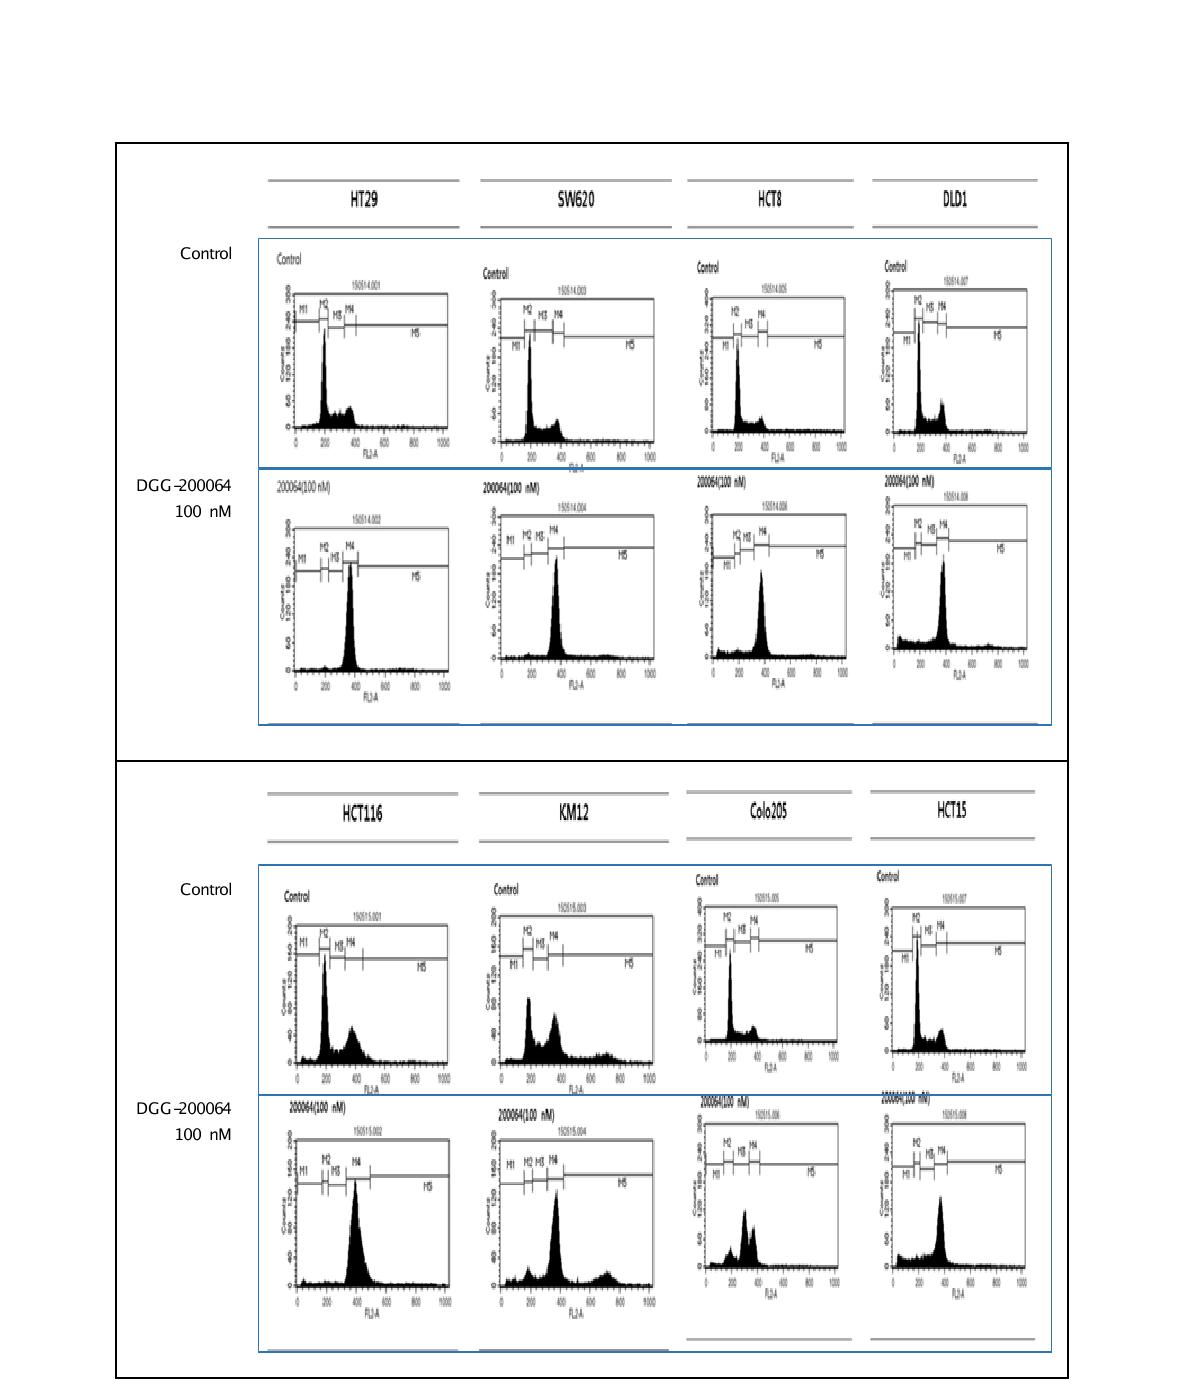 그림 35. FACS 분석을 통한 대장암세포 (HCT116, HCT15, KM12, DLD1, Colo205, SW620, HT29,HCT8)에서 선도물질 DGG-200064의 G2-M 세포증식 억제 확인.